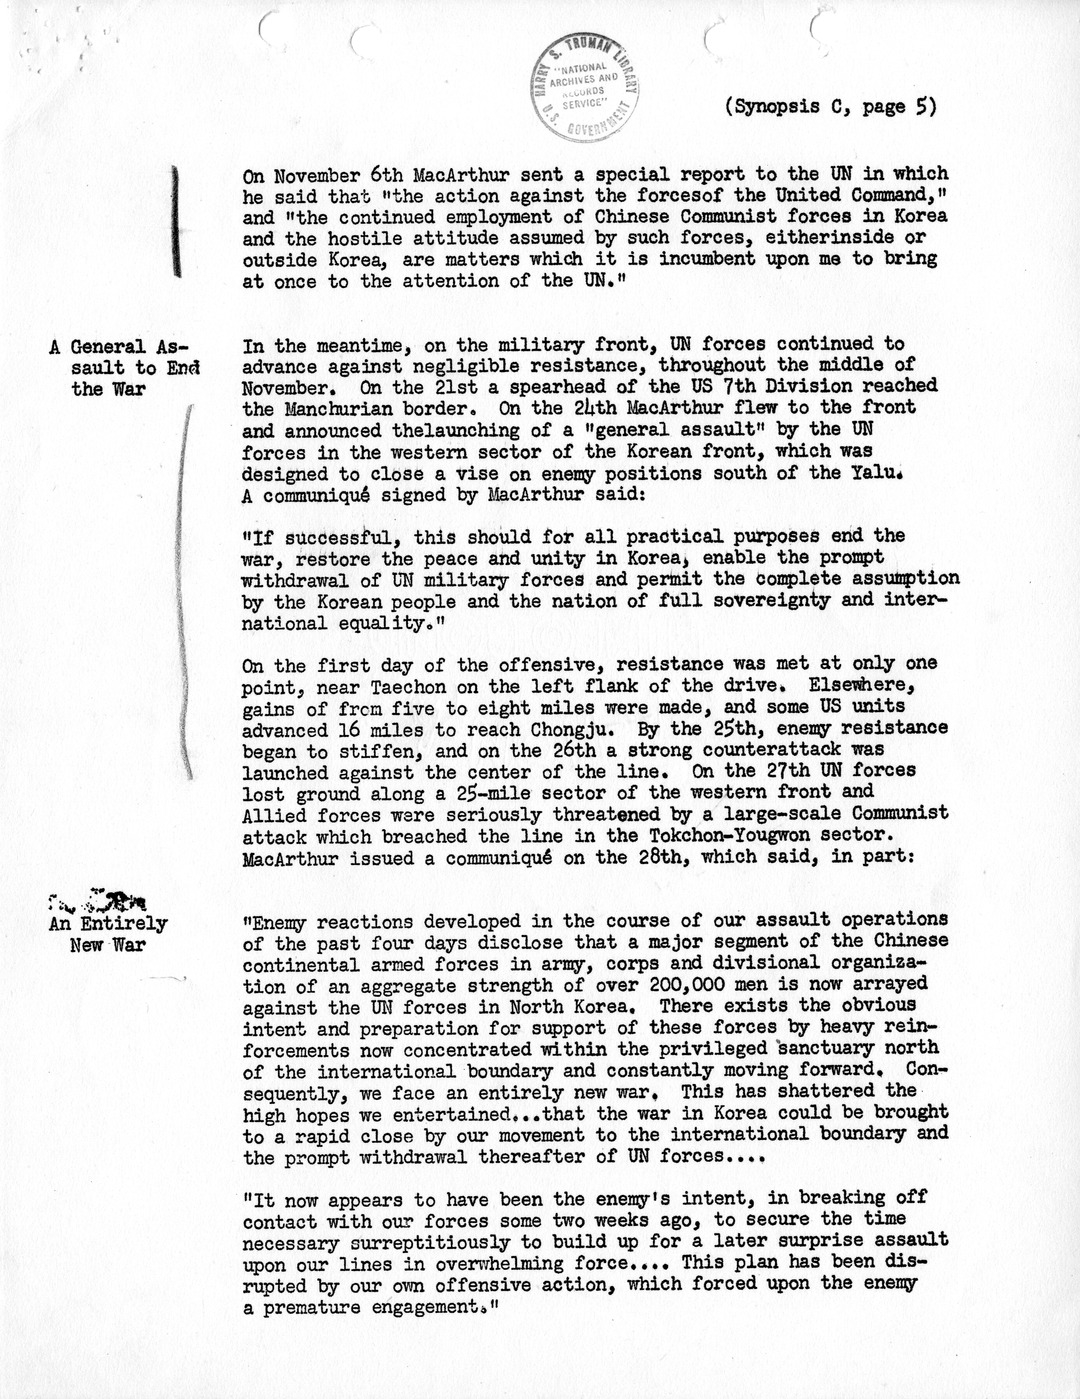 Synopsis C, Korea - Northwards to the Yalu, September-November, 1950